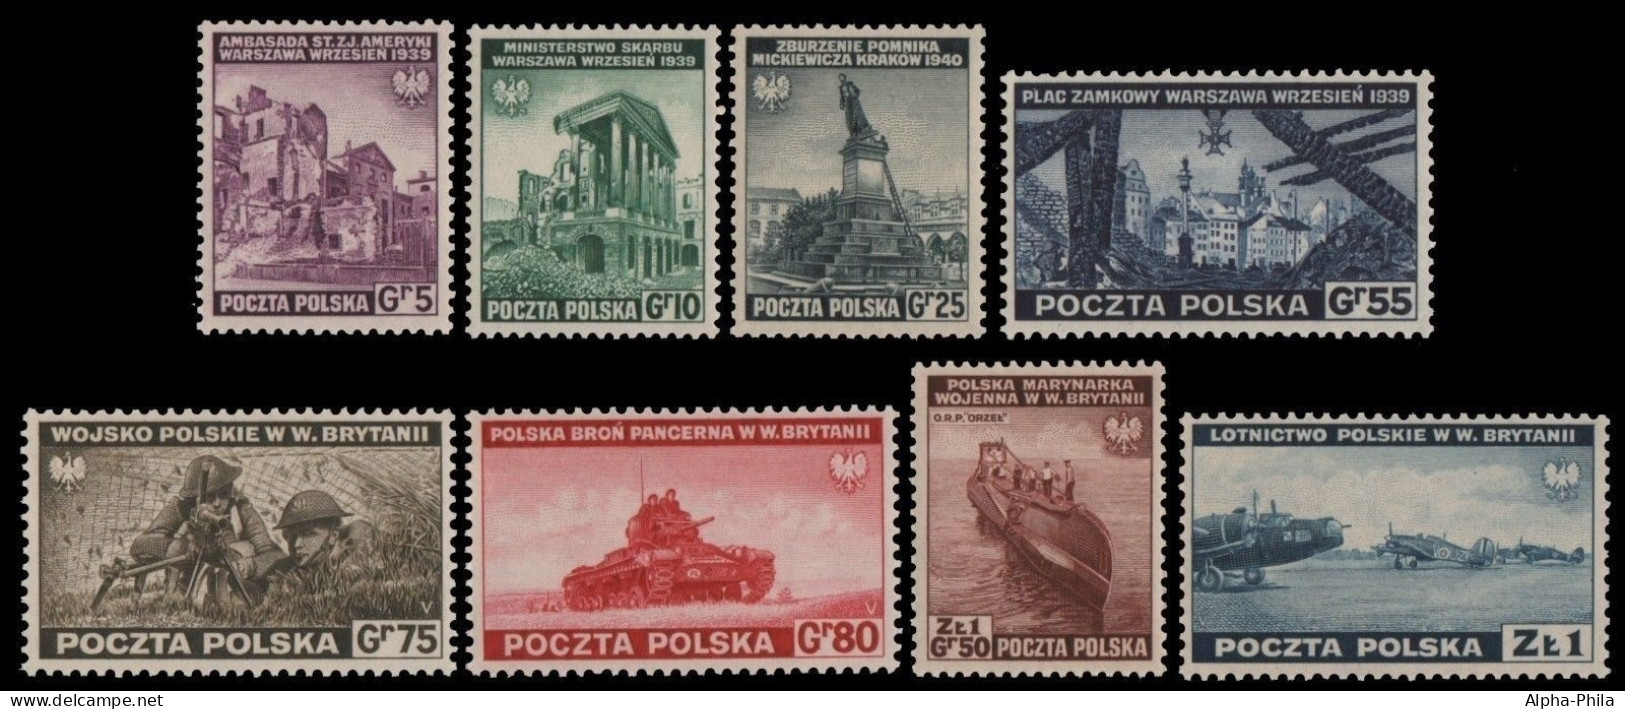 Polen 1941 - Mi-Nr. 360-367 ** - MNH - Kriegsszenen - Londoner Regierung (Exil)